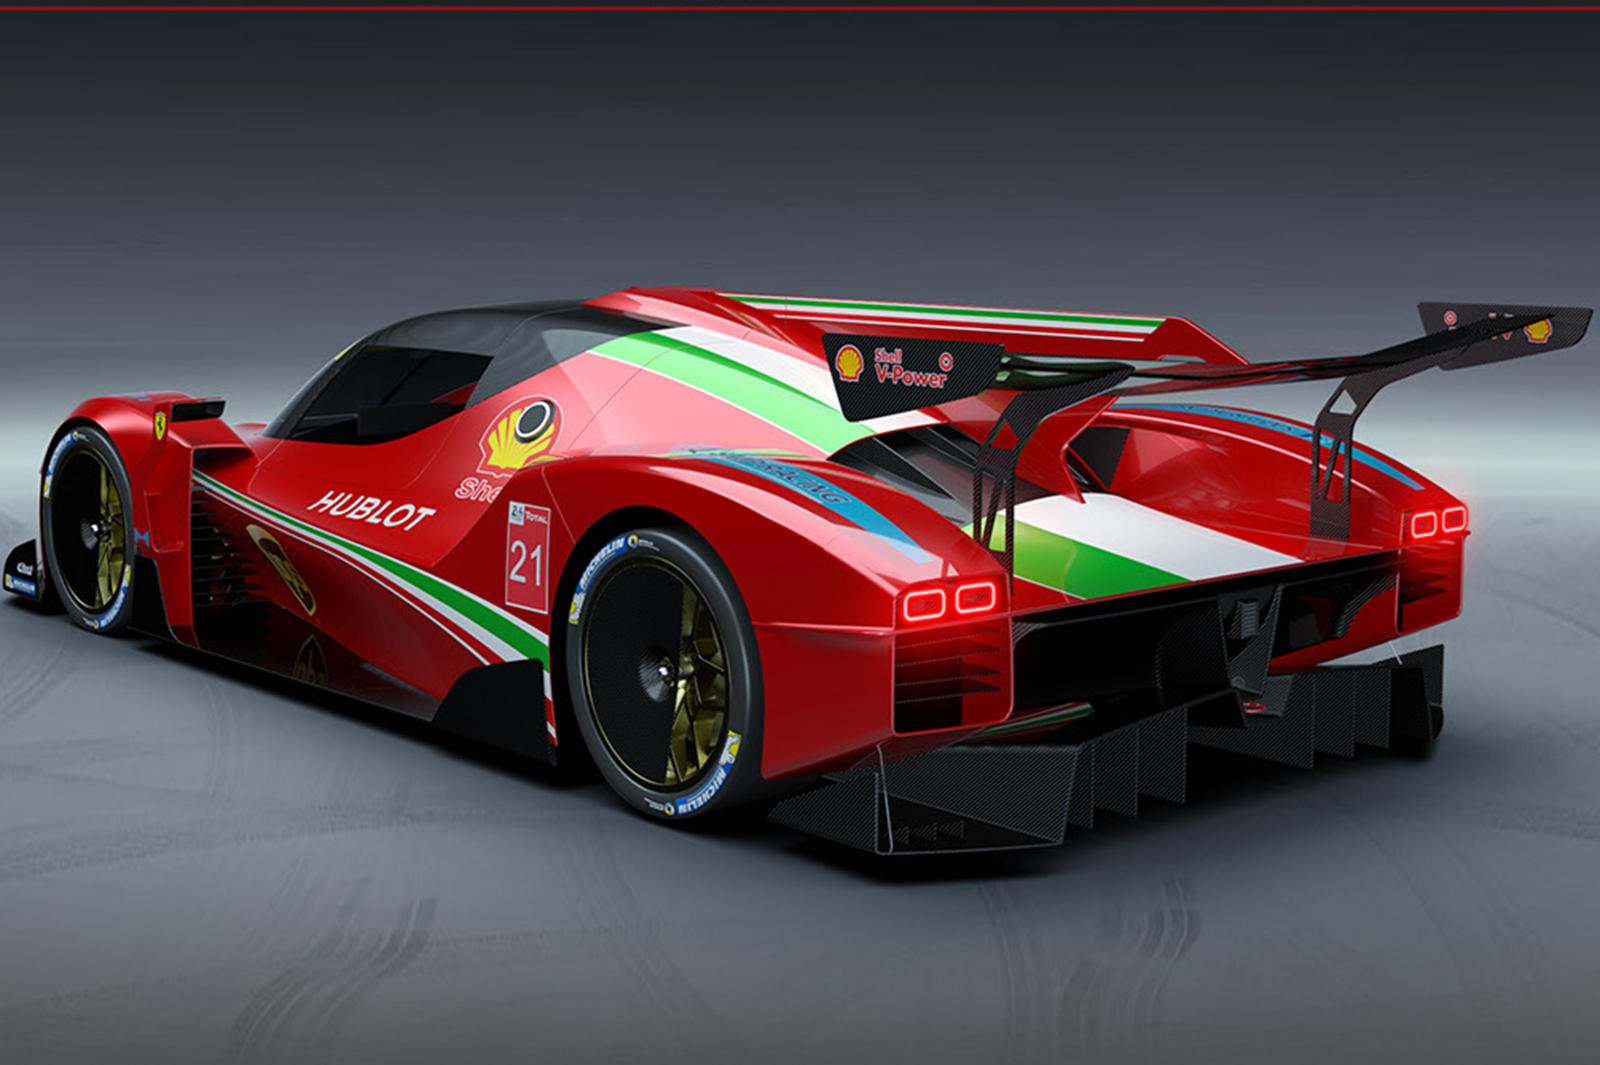 Ferrari вслед за Toyota и Peugeot подтверждает, что выйдет в новый класс и будет участвовать в гонках вместе с Porsche, Audi и американской бутиковой компанией Scuderia Cameron Glickenhaus. К сожалению, Aston Martin приостановил свою гоночную програм